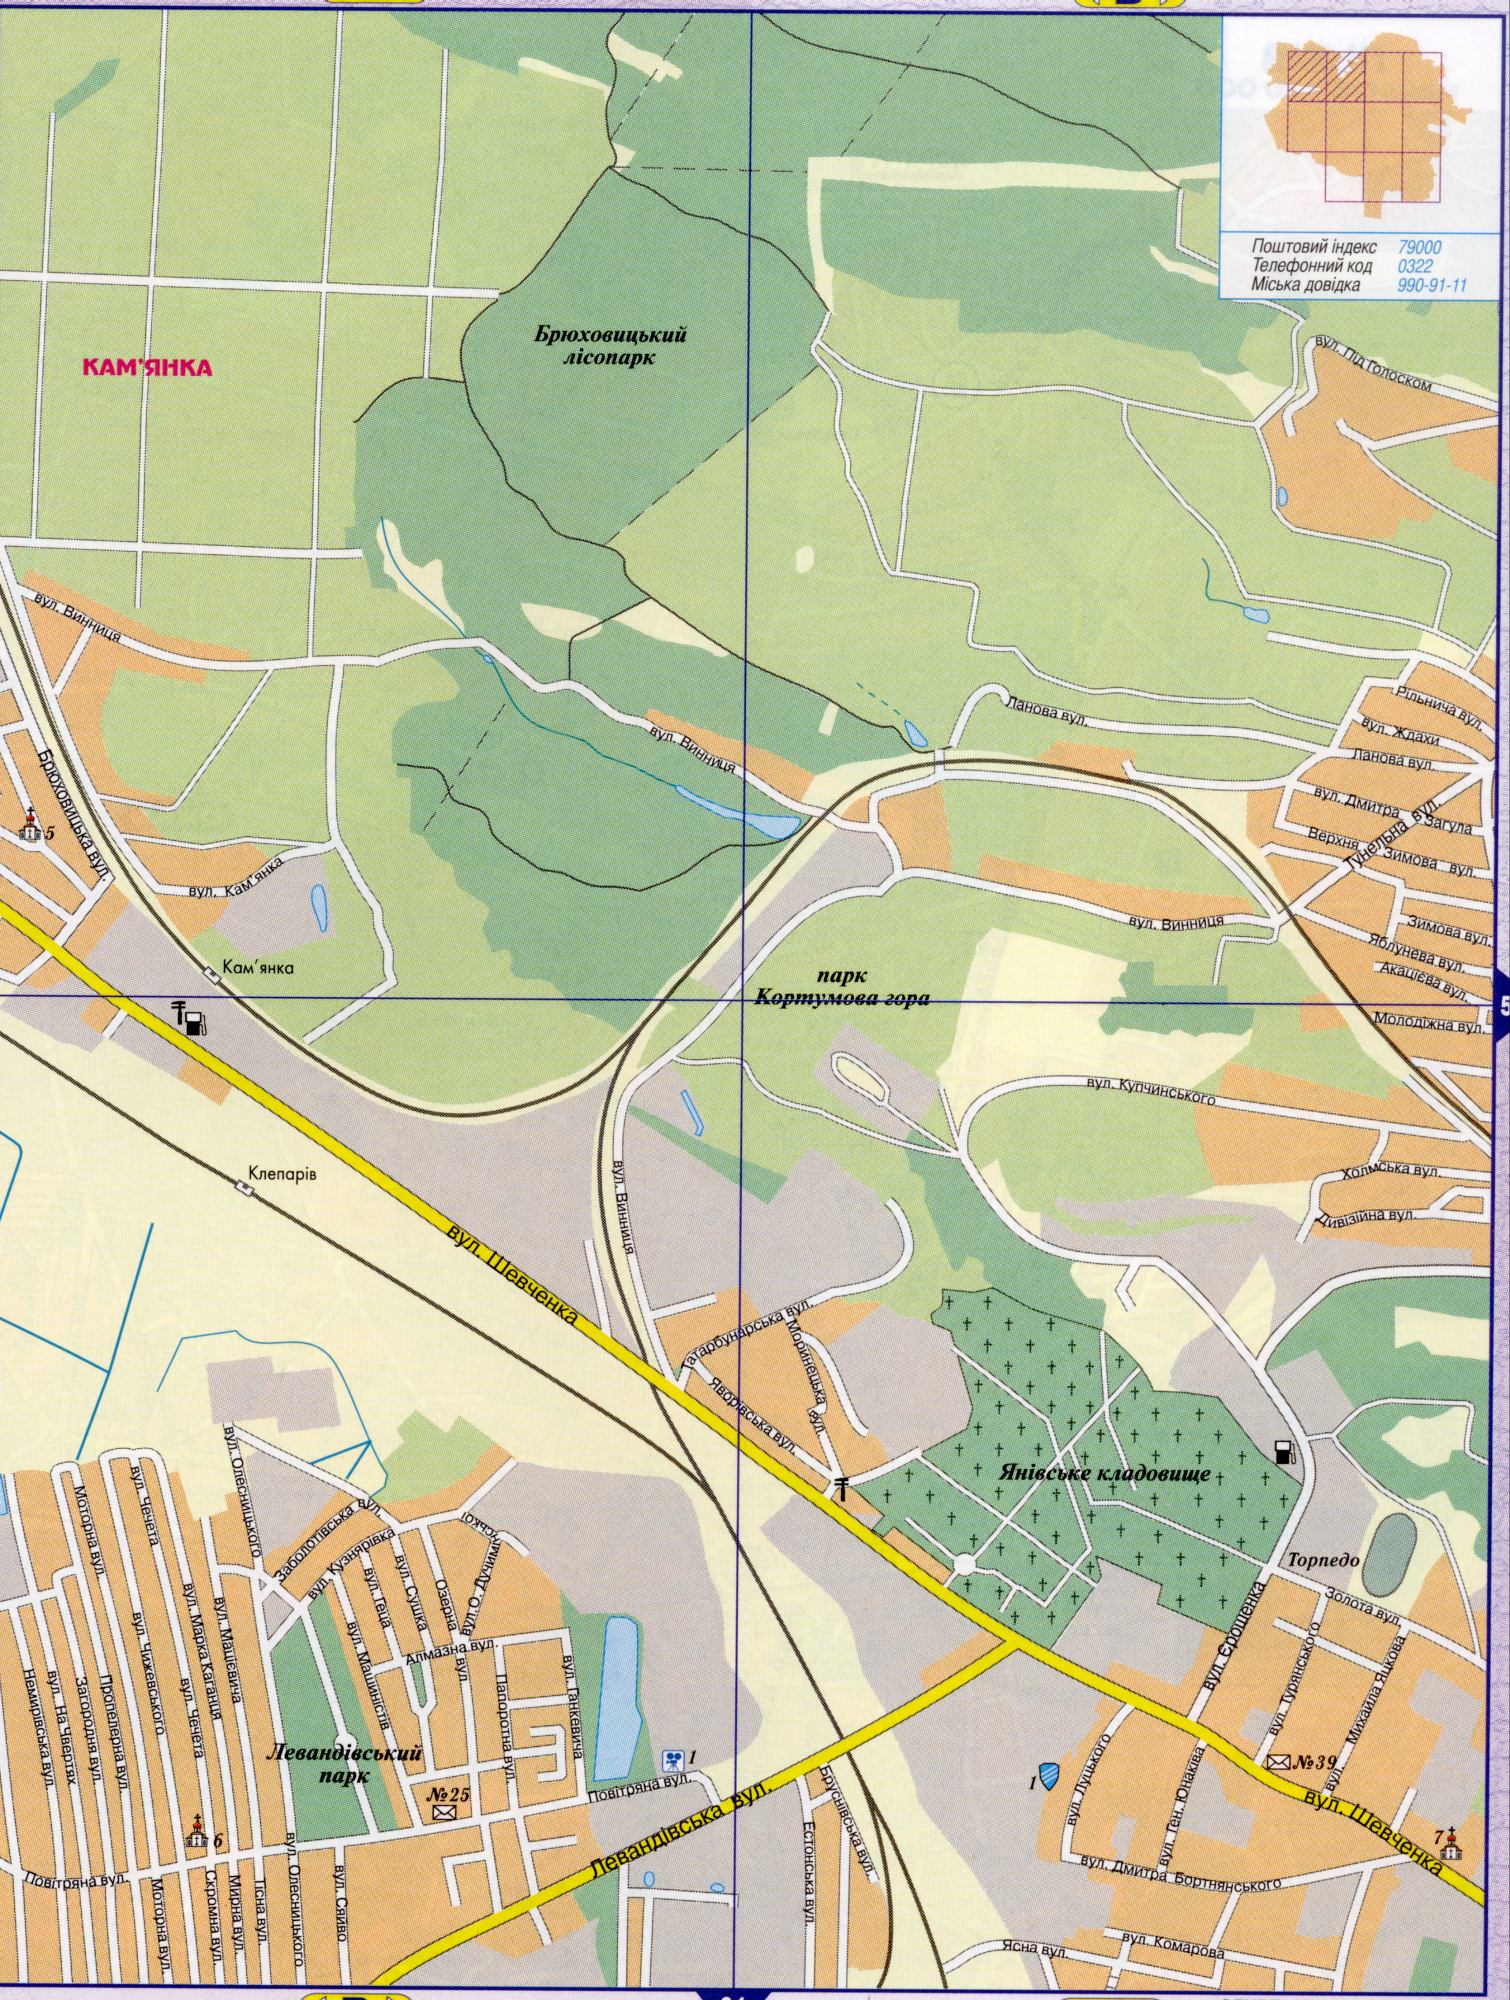 Карта Львова подробная, масштаб в 1 см 200 метров. Областной центр Львовской области. Скачать бесплатно , B0